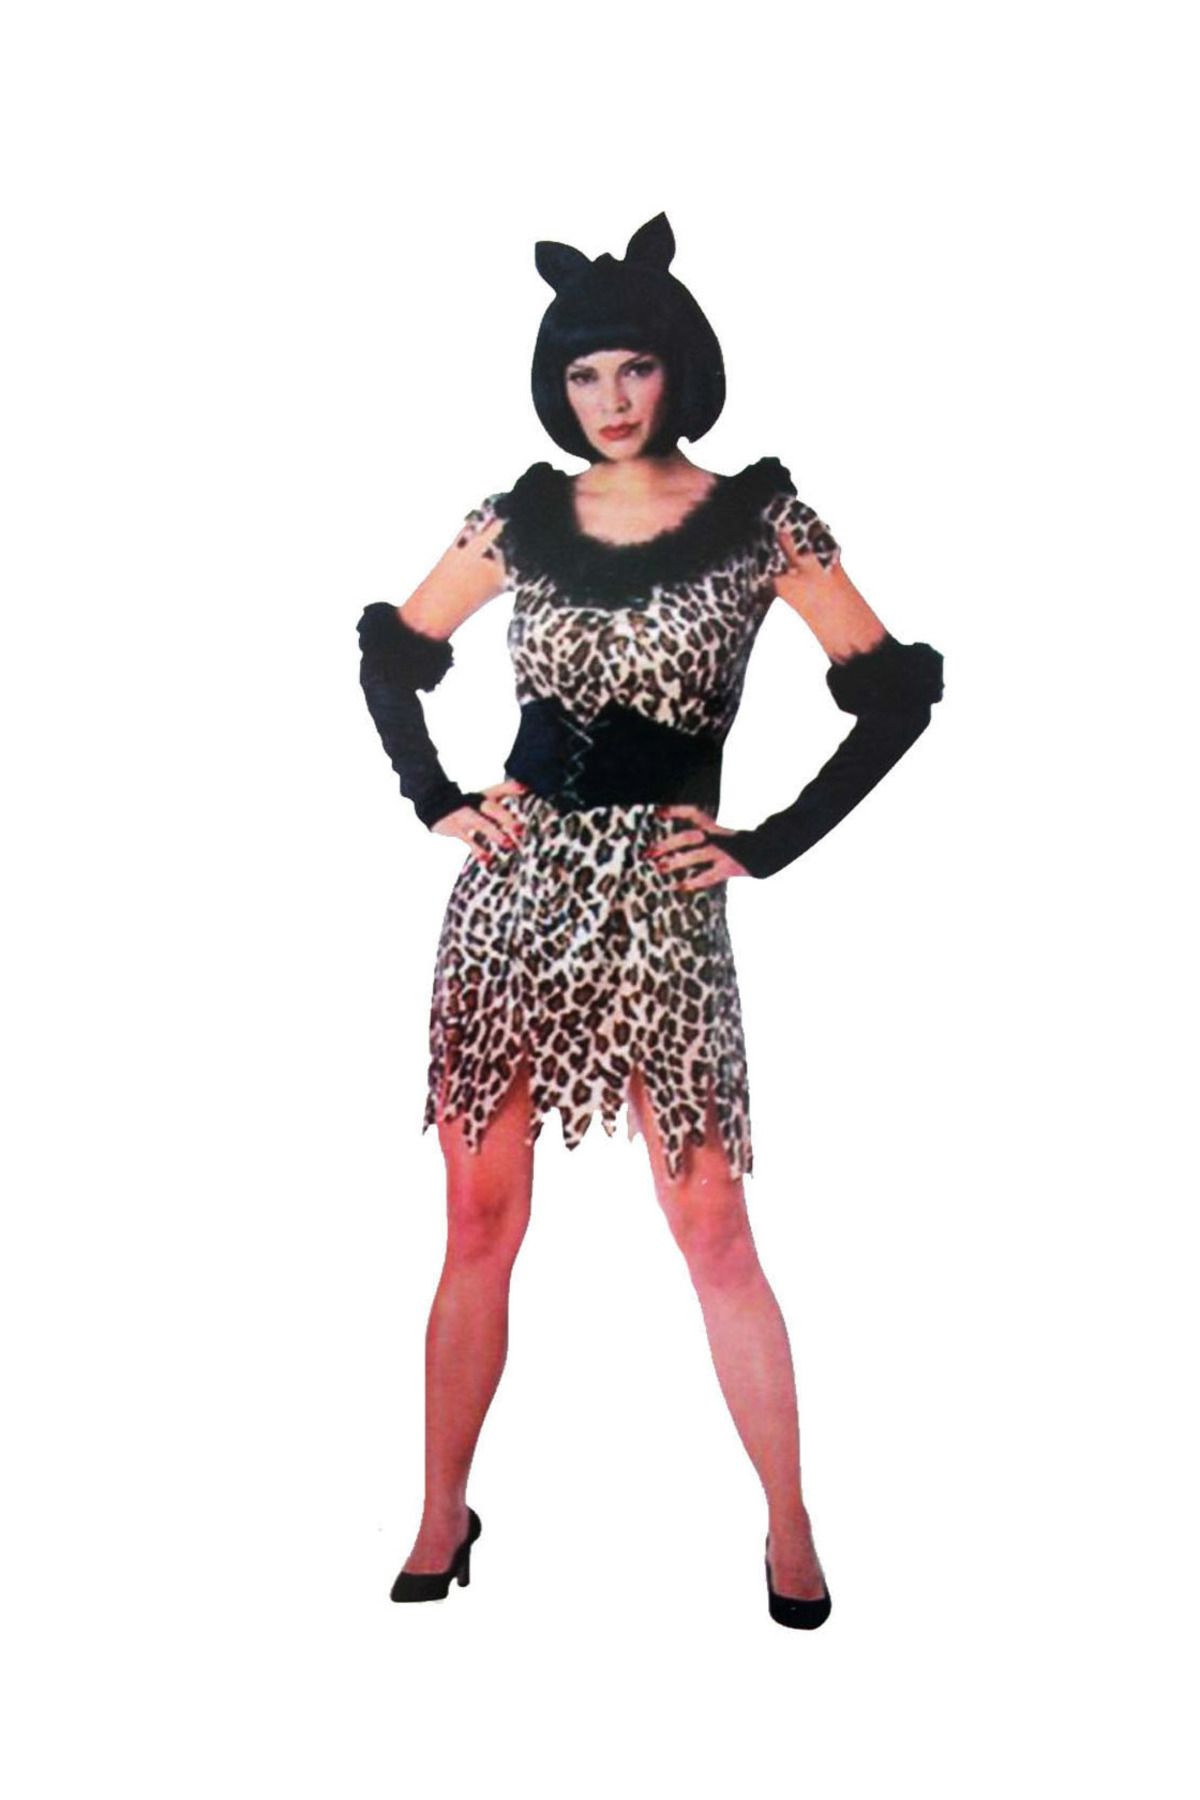 Yurt Marketing Yetişkin  Leopar Kostümü  - Kedi Kız Kostümü - Taş Devri Kostümü  (CLZ)